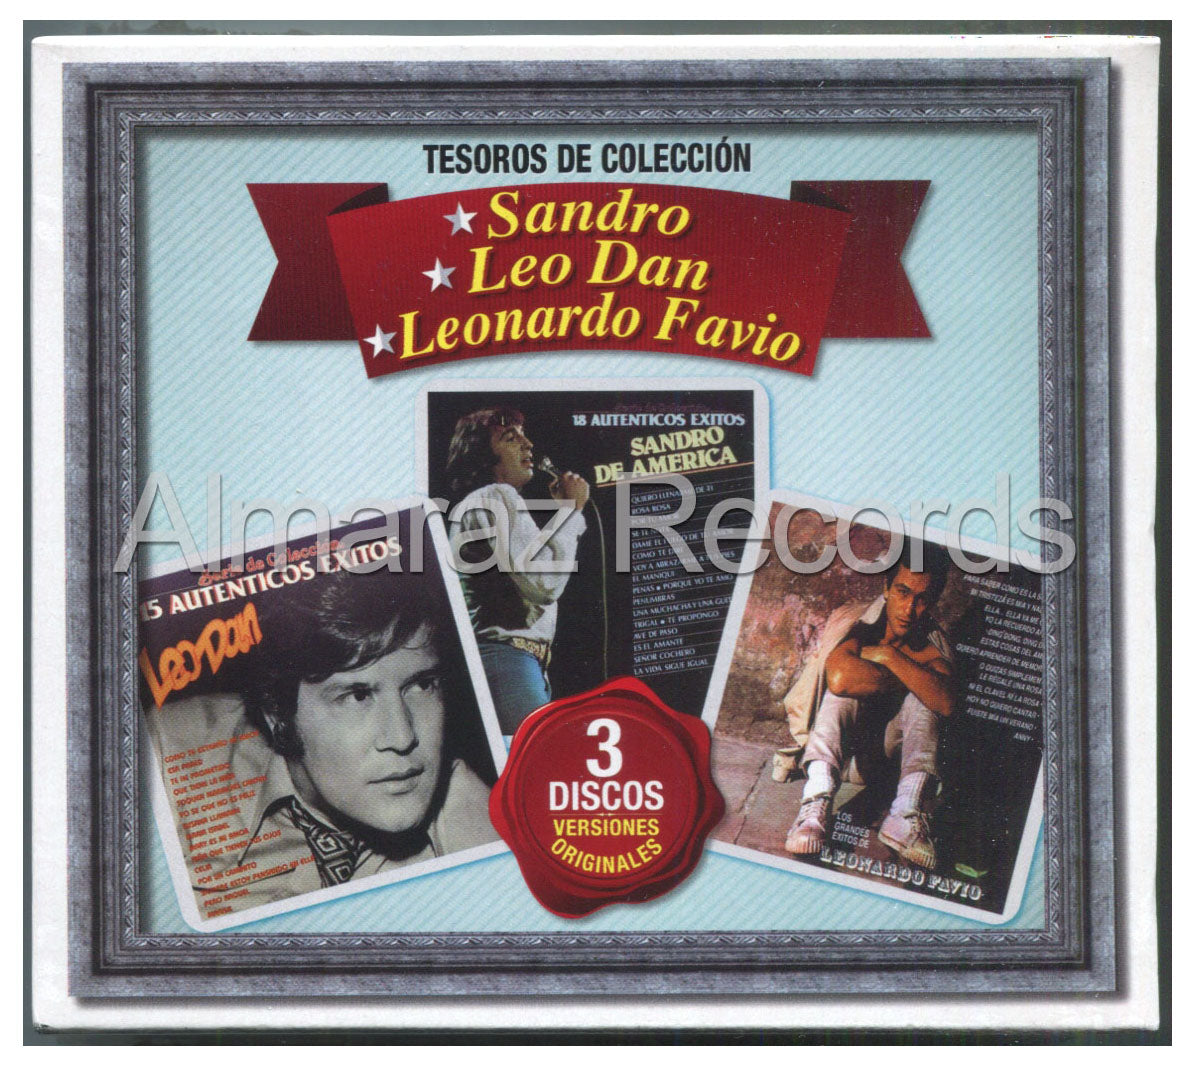 Tesoros De Coleccion Leo Dan Sandro De America Leonardo Flavio 3CD